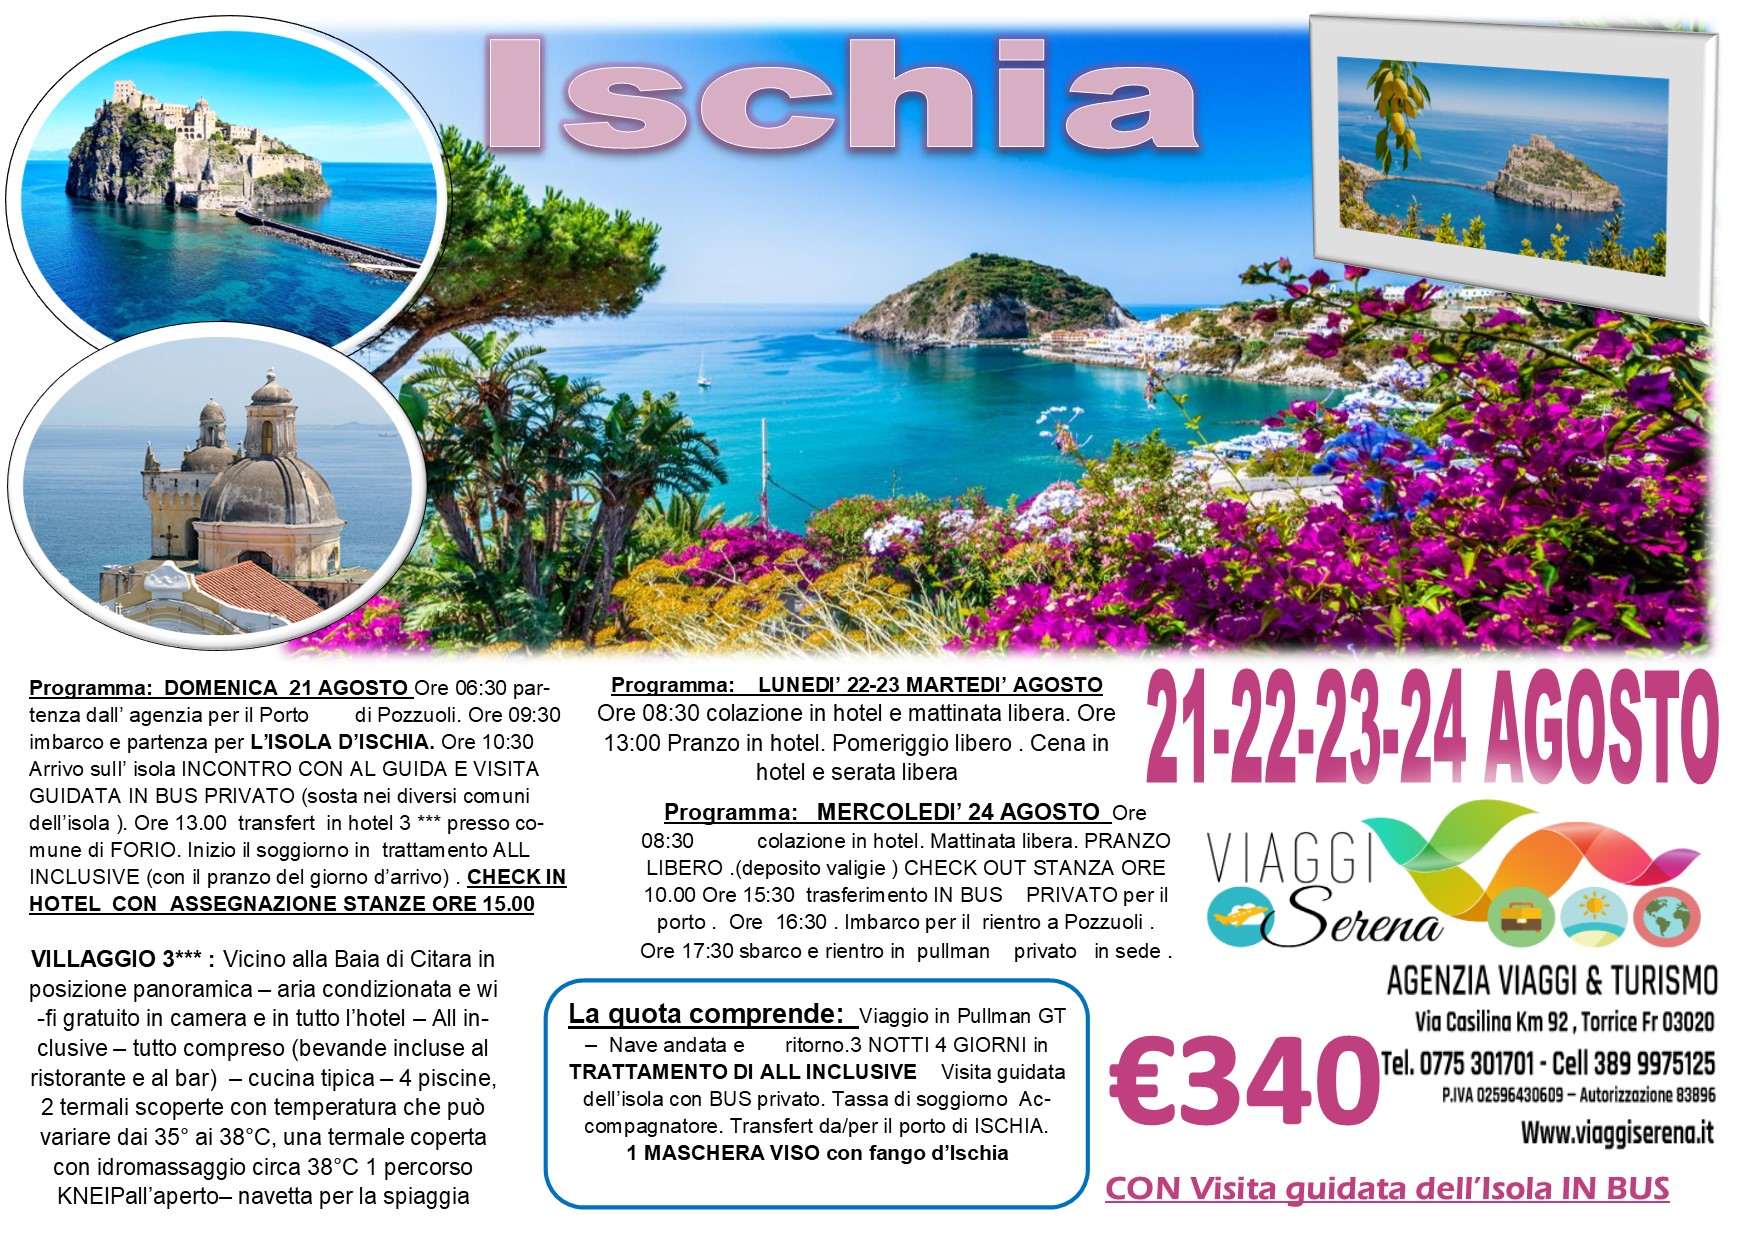 Viaggi di Gruppo: Isola d’ISCHIA 21-24 Agosto € 340,00